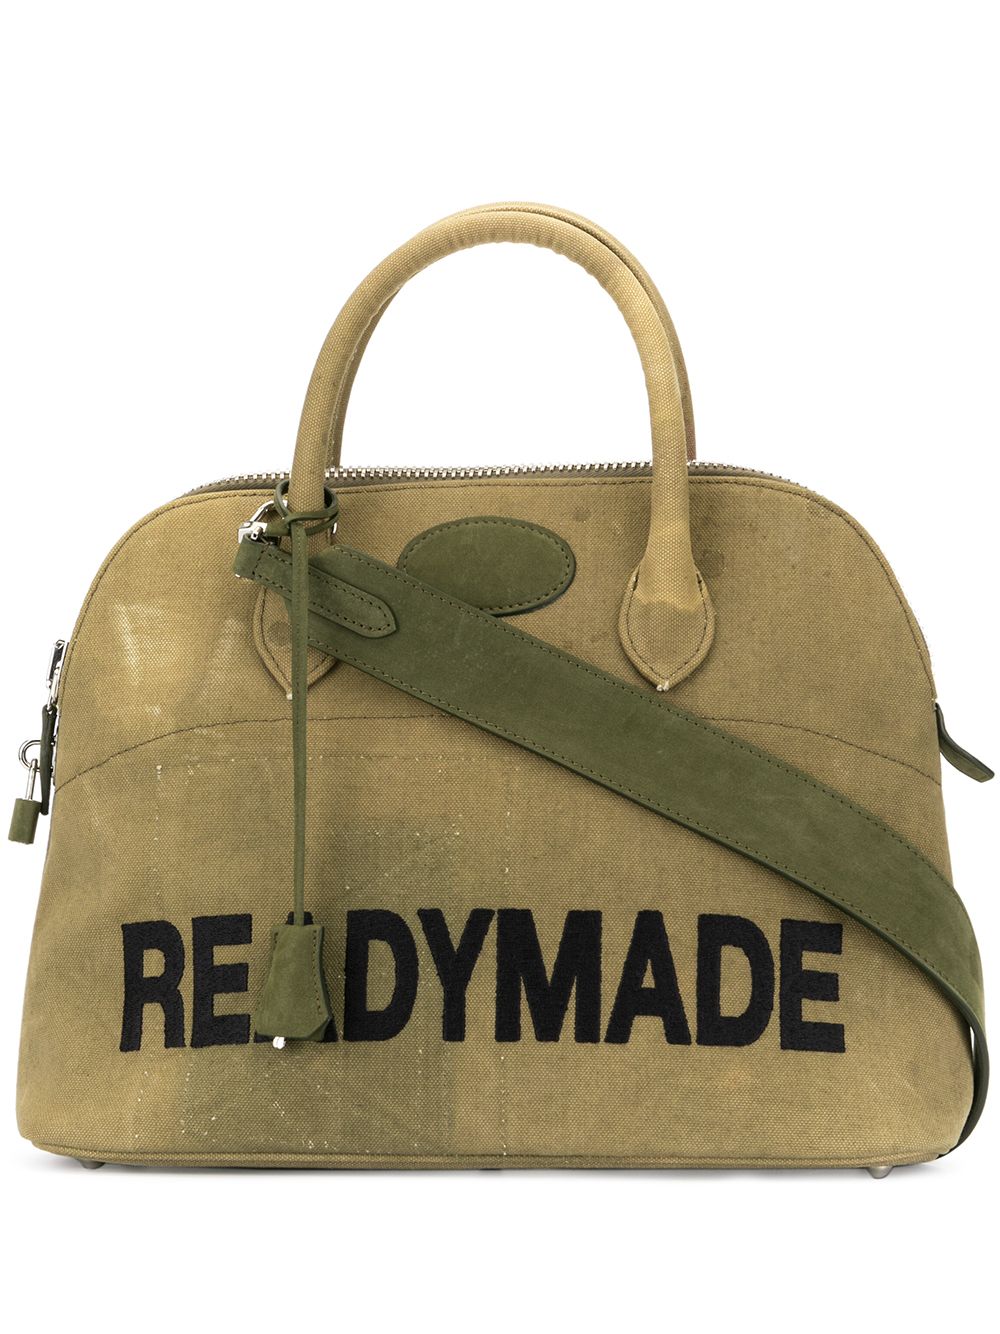 Readymade woven tote bag - Green von Readymade